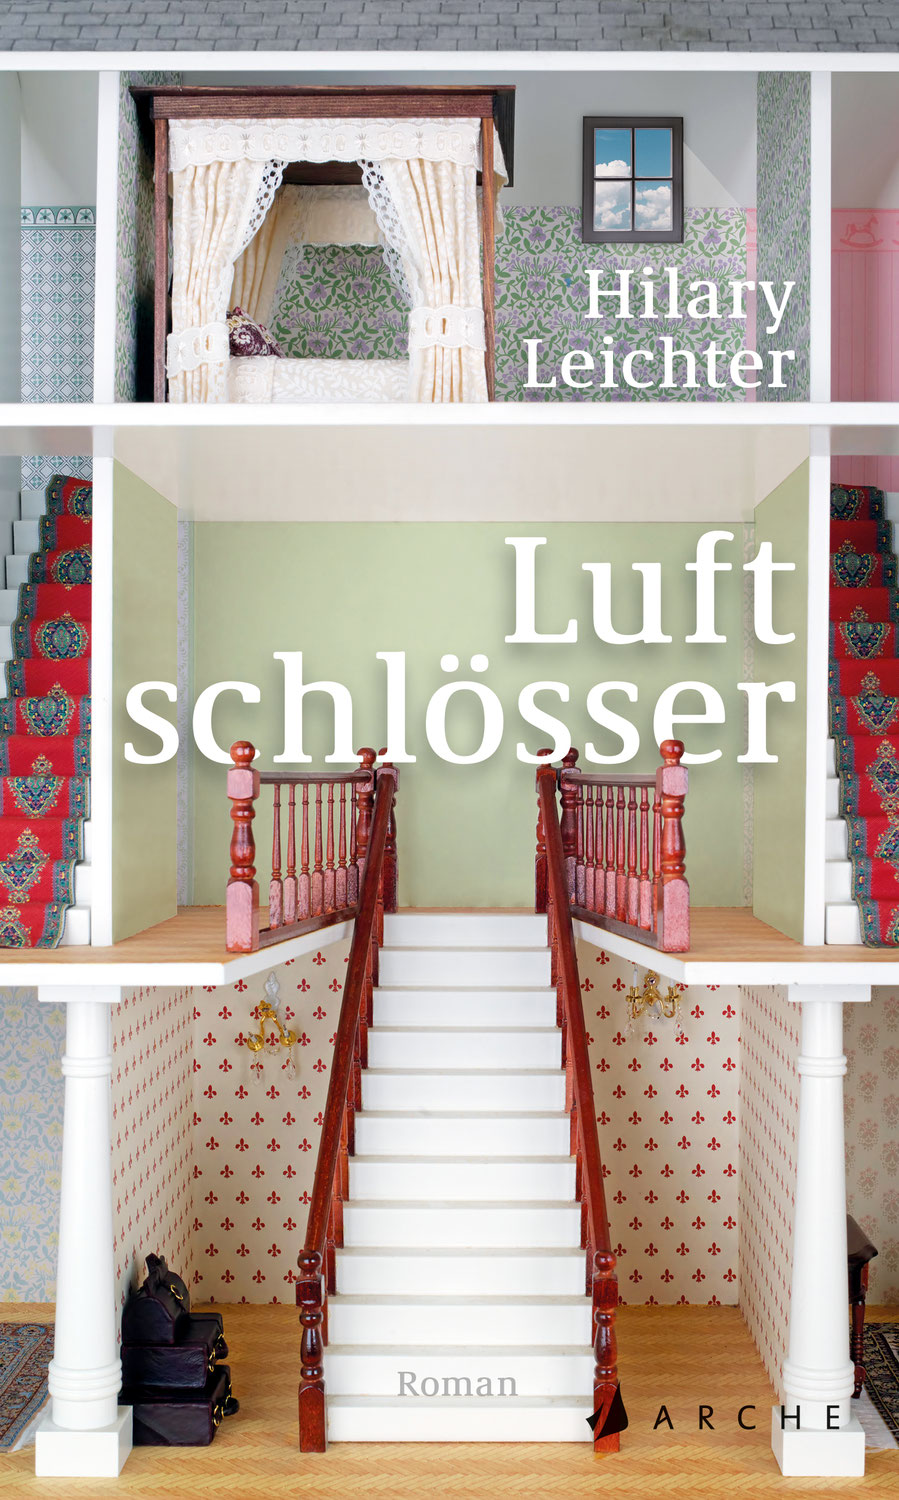 Luftschlösser von Hilary Leichter im Arche Verlag